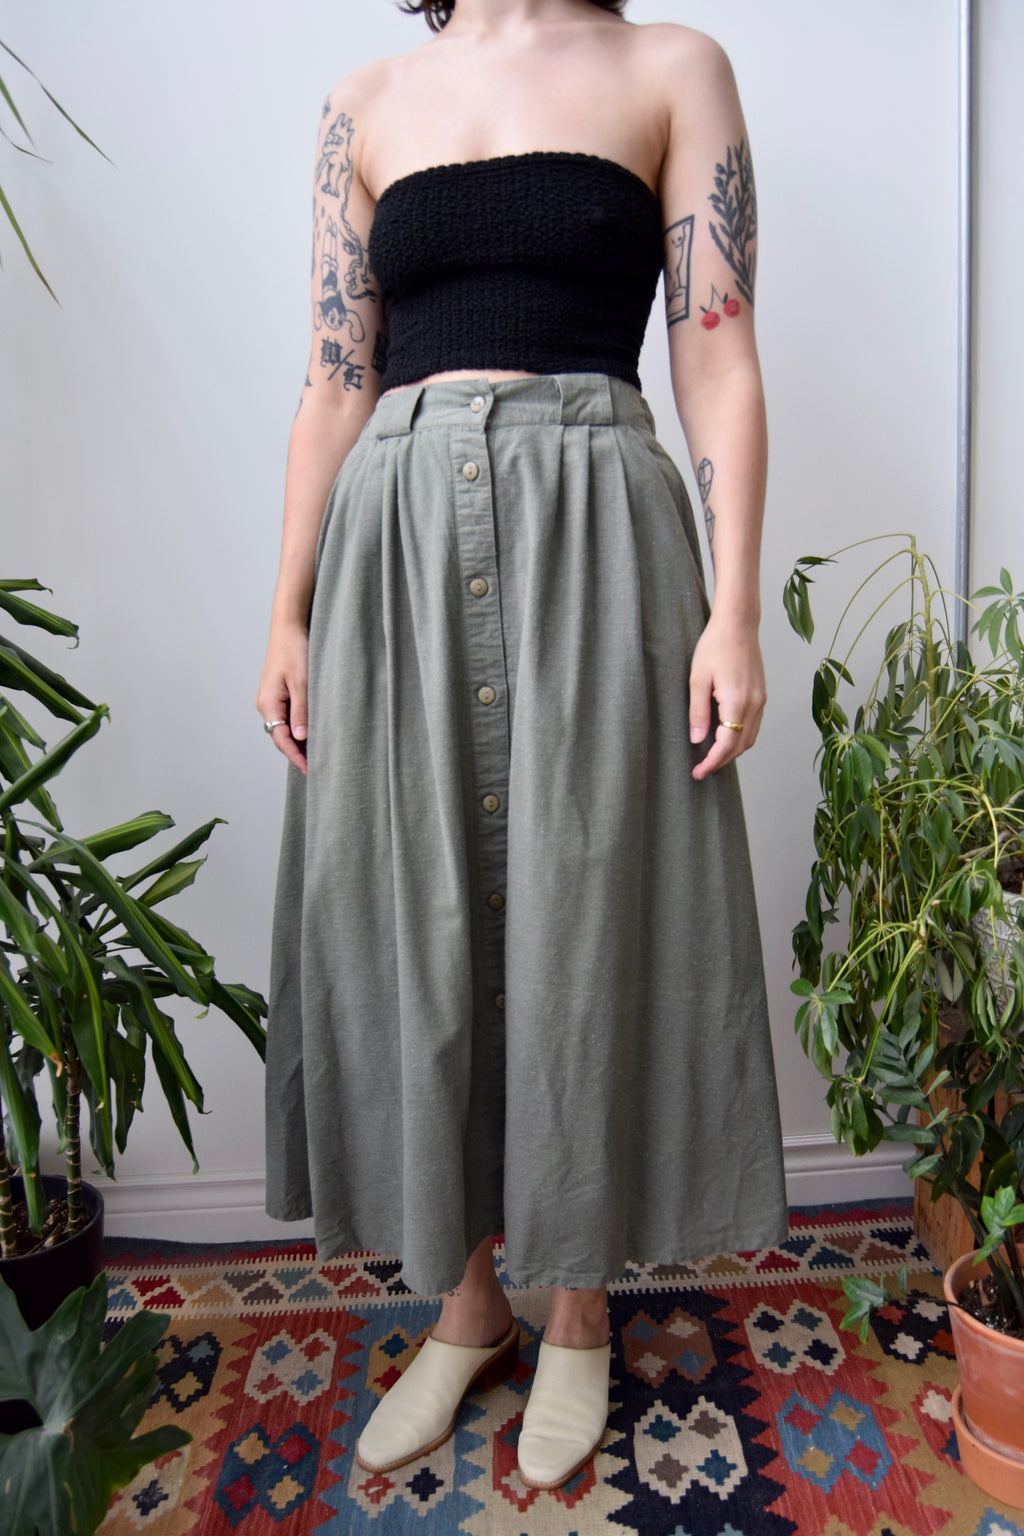 Eighties Rosemary Skirt